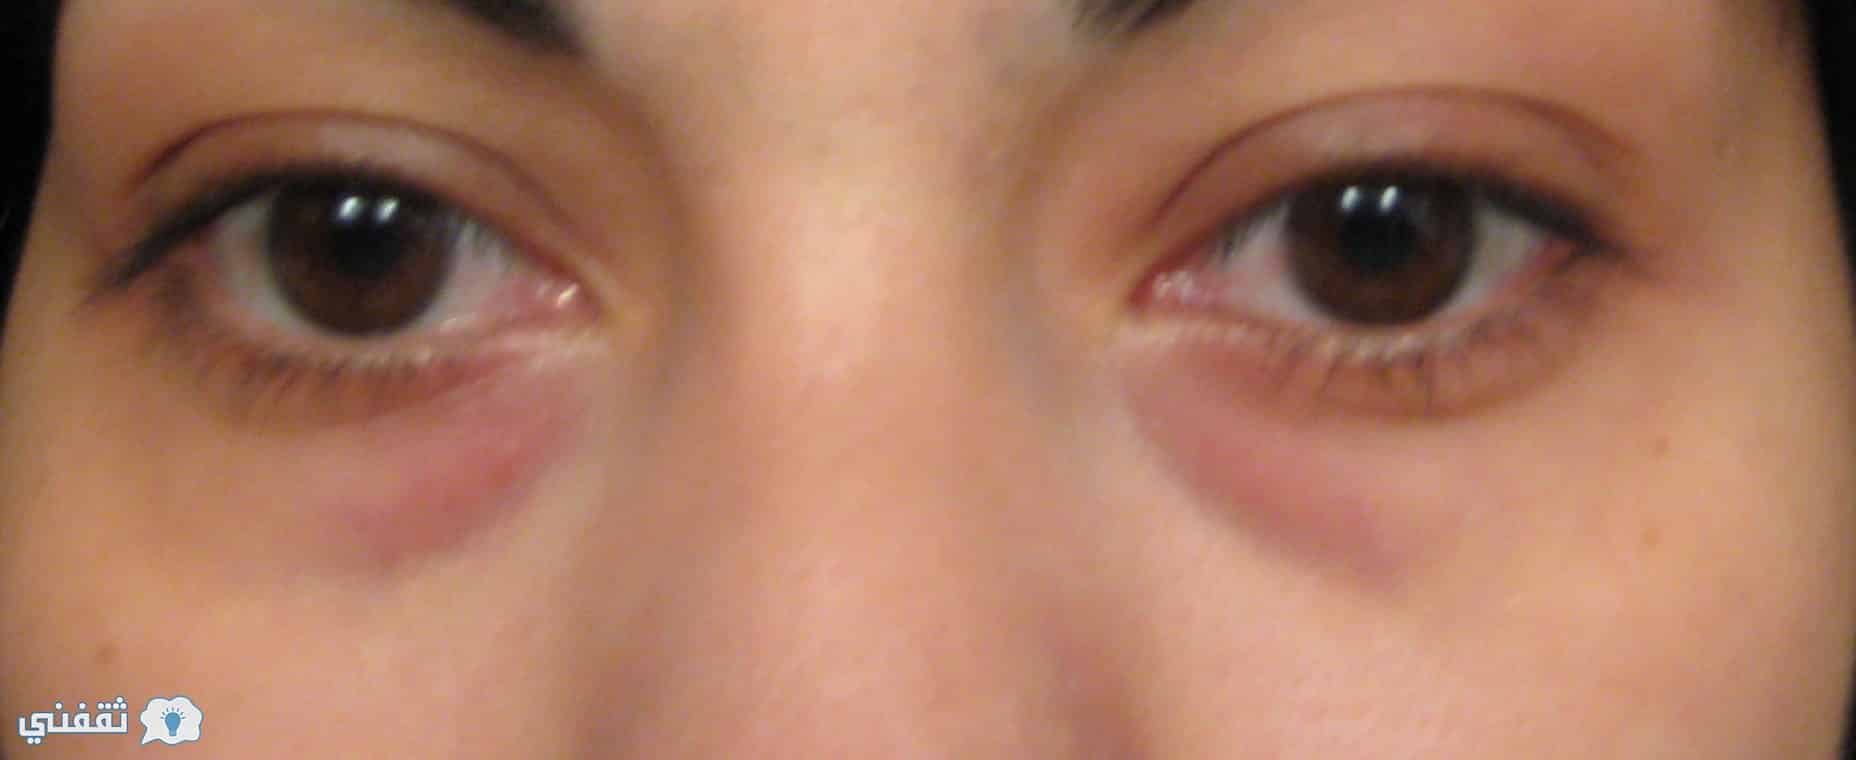 طرق علاج انتفاخ العينين